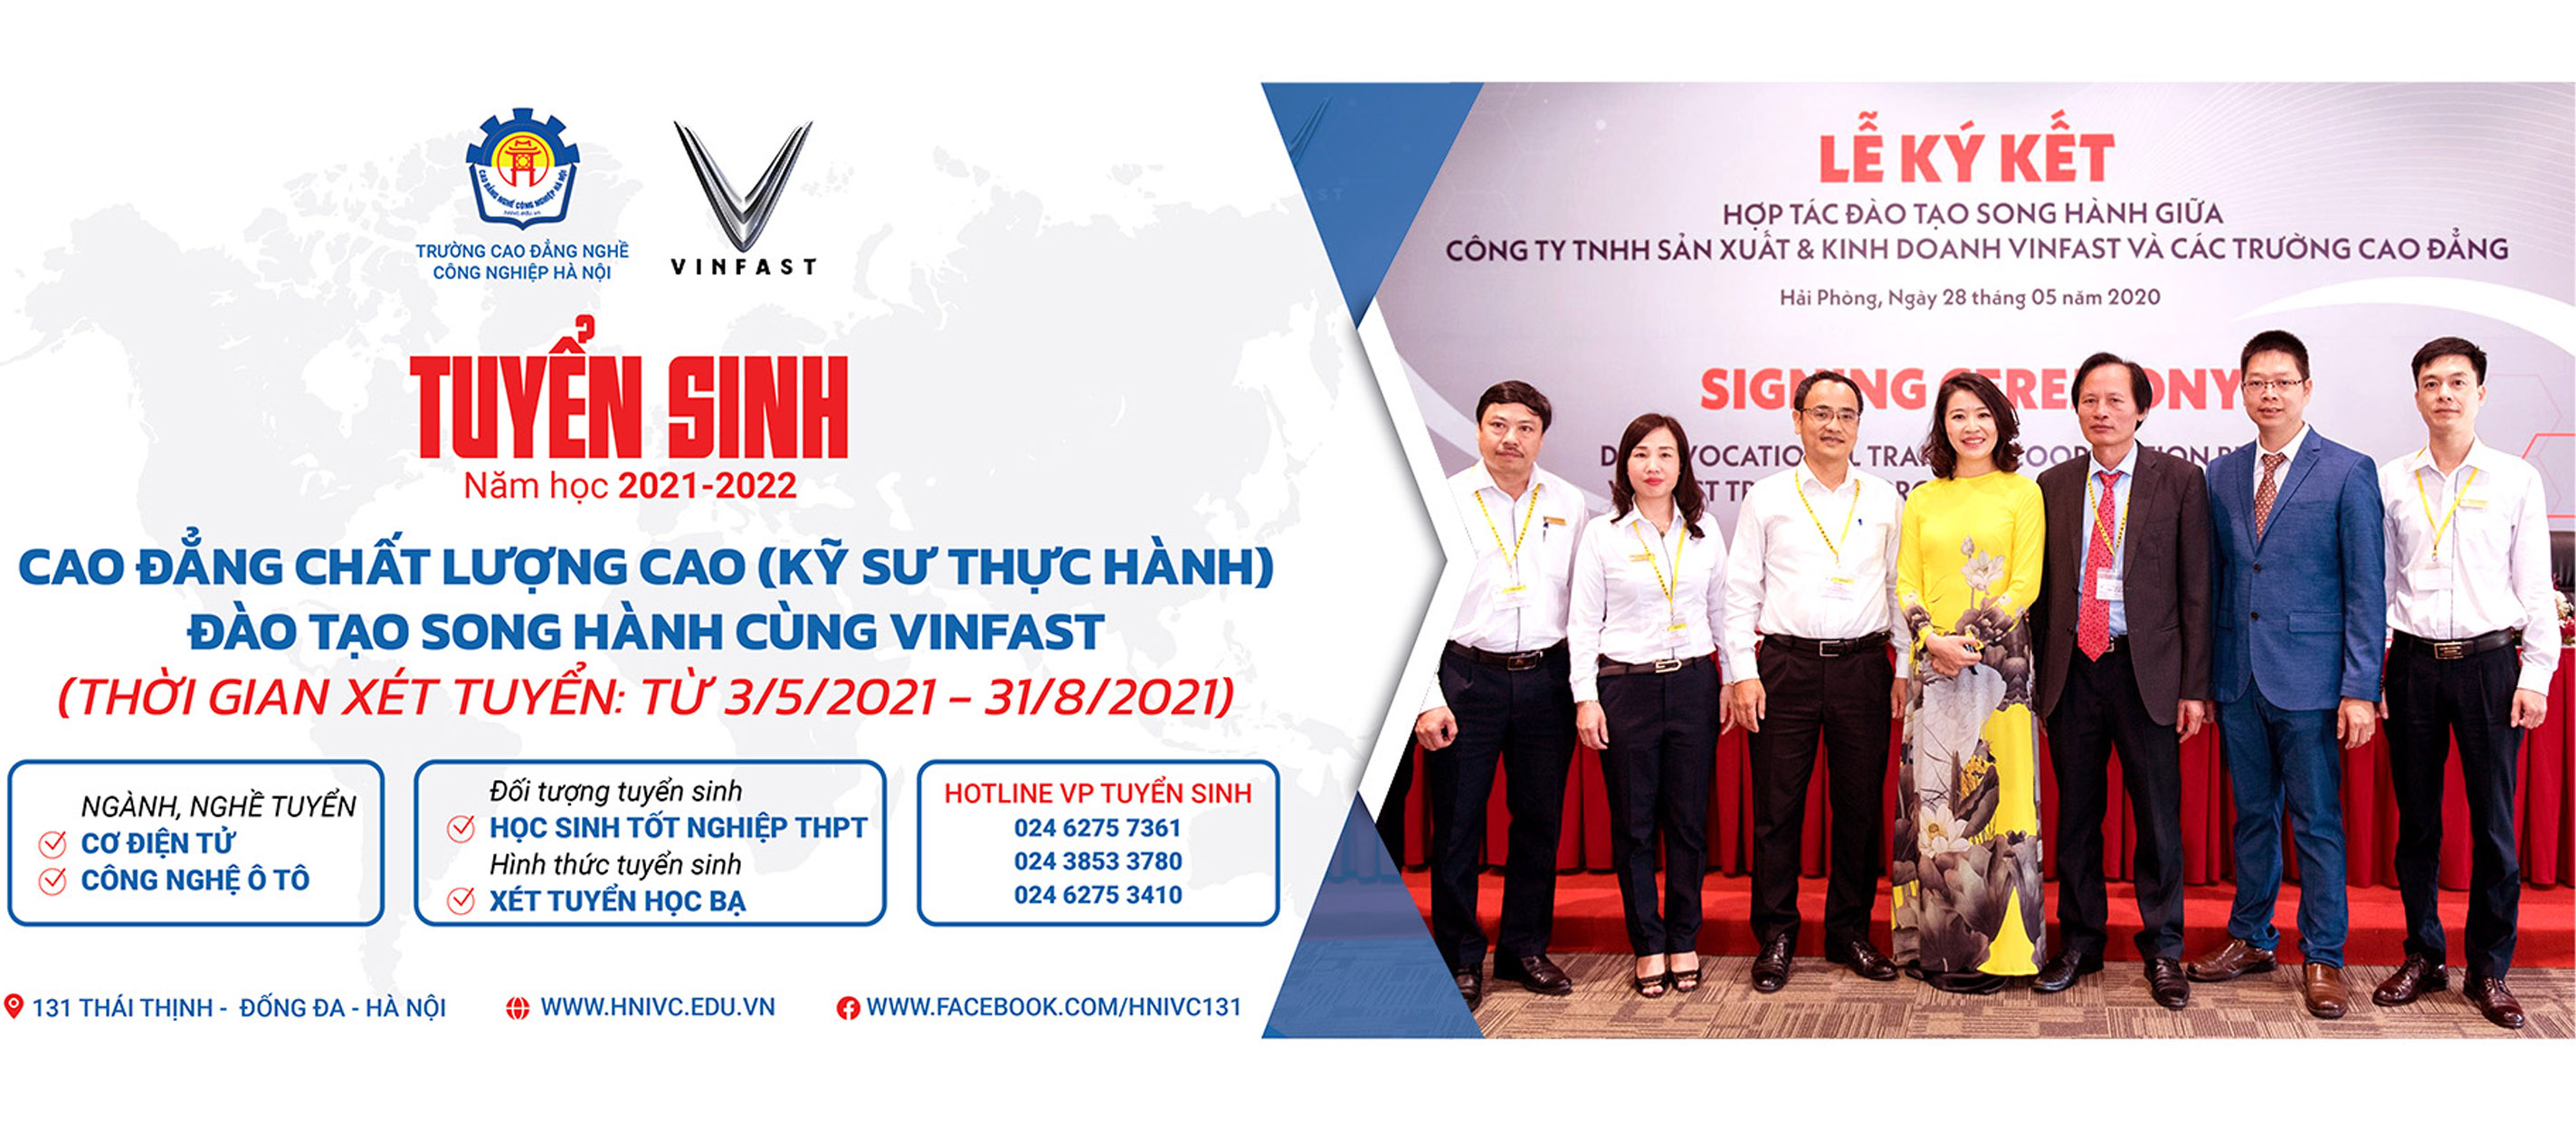 Cao đẳng nghề Công nghiệp Hà Nội là một trong những trường hàng đầu về đào tạo nghề tại Việt Nam. Hãy xem hình ảnh liên quan để khám phá những tài năng trẻ đang được đào tạo tại trường này, cũng như những chương trình đào tạo mới nhất.